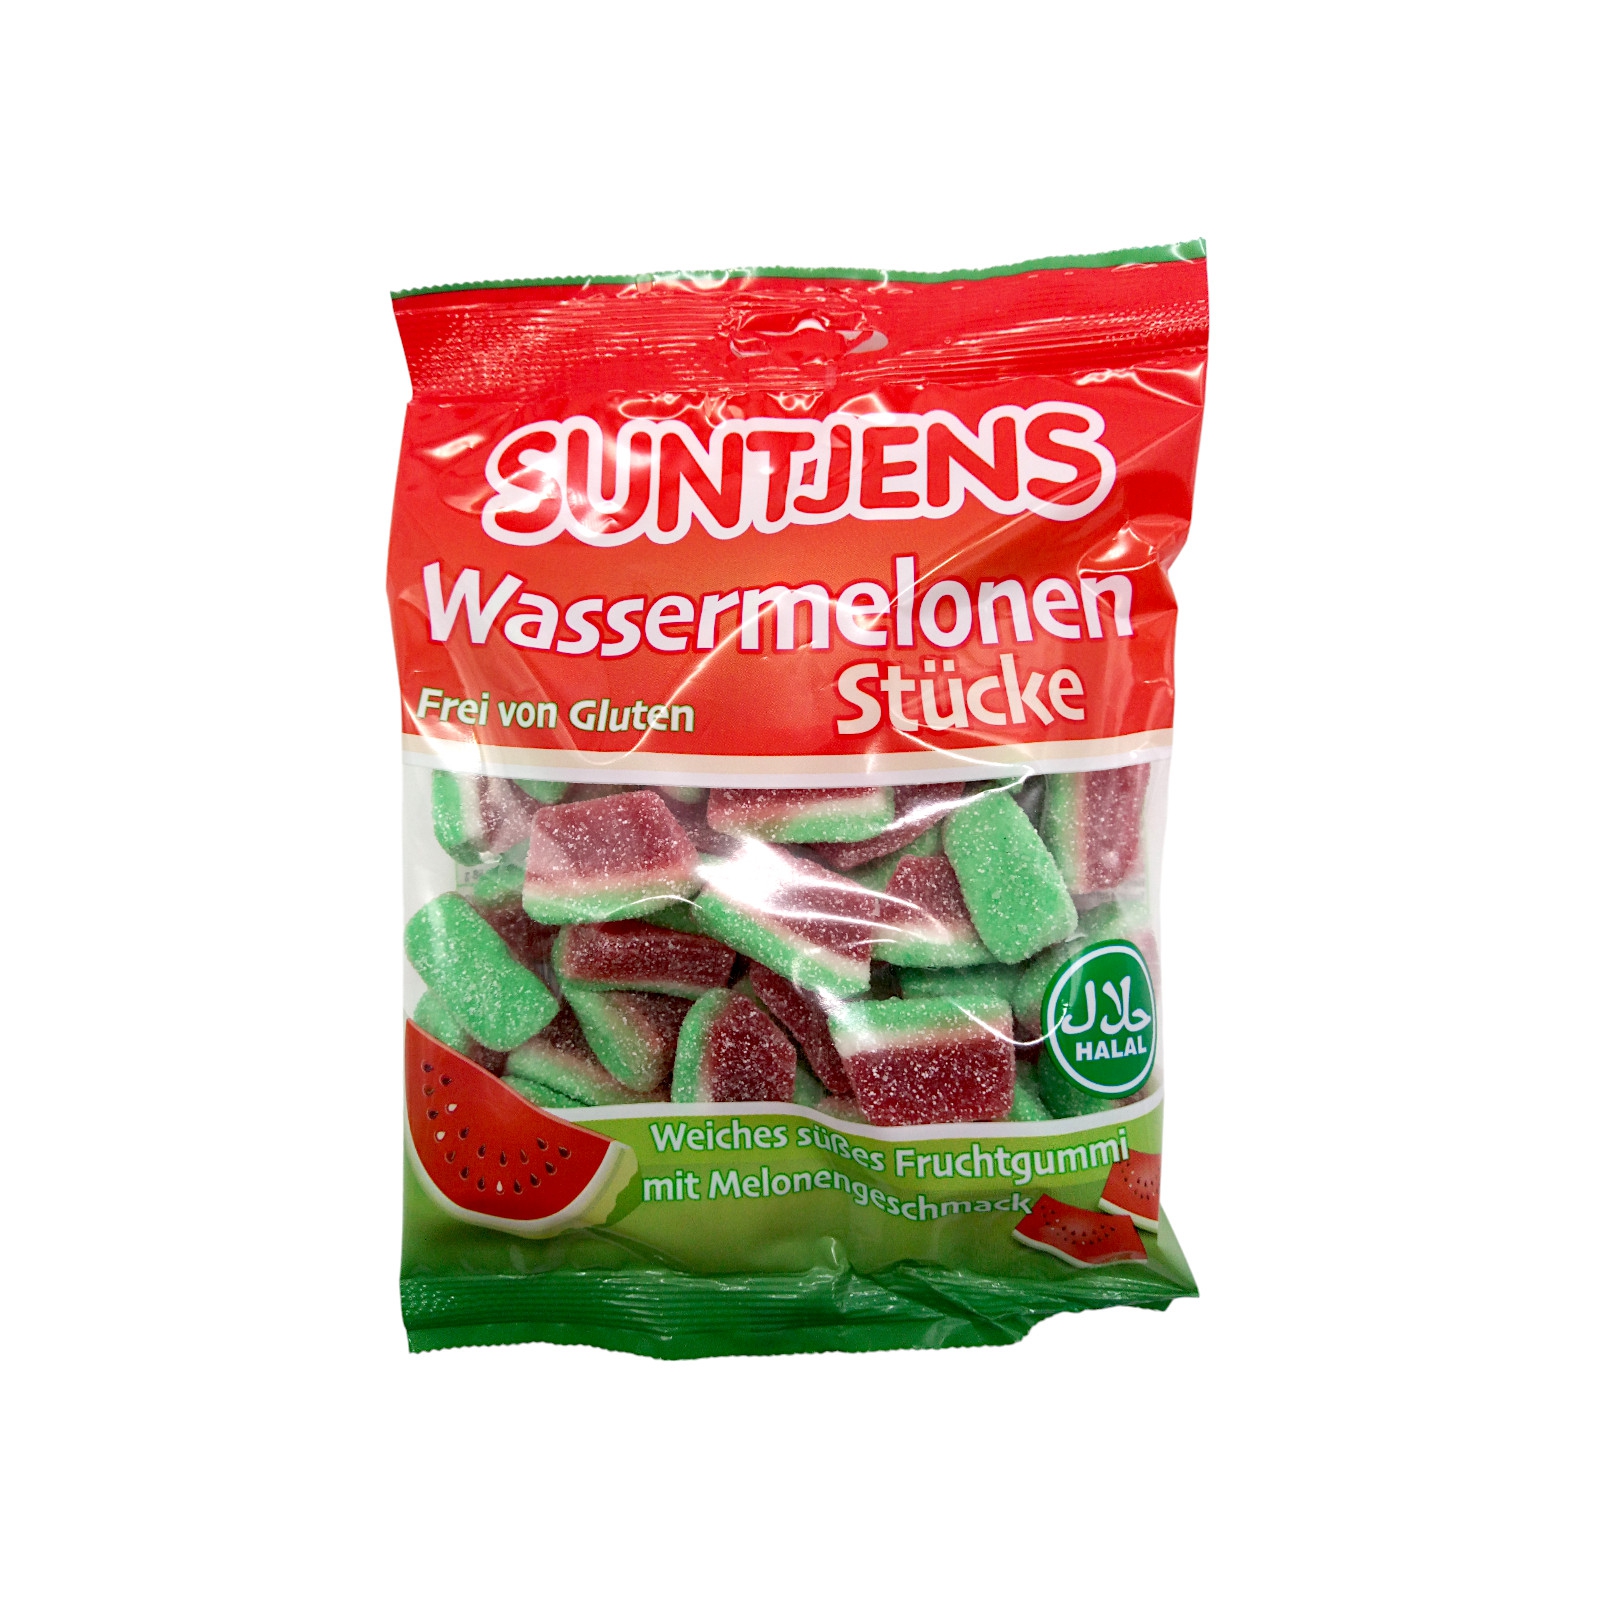 Suntjens Wassermelonen Stücke 300g